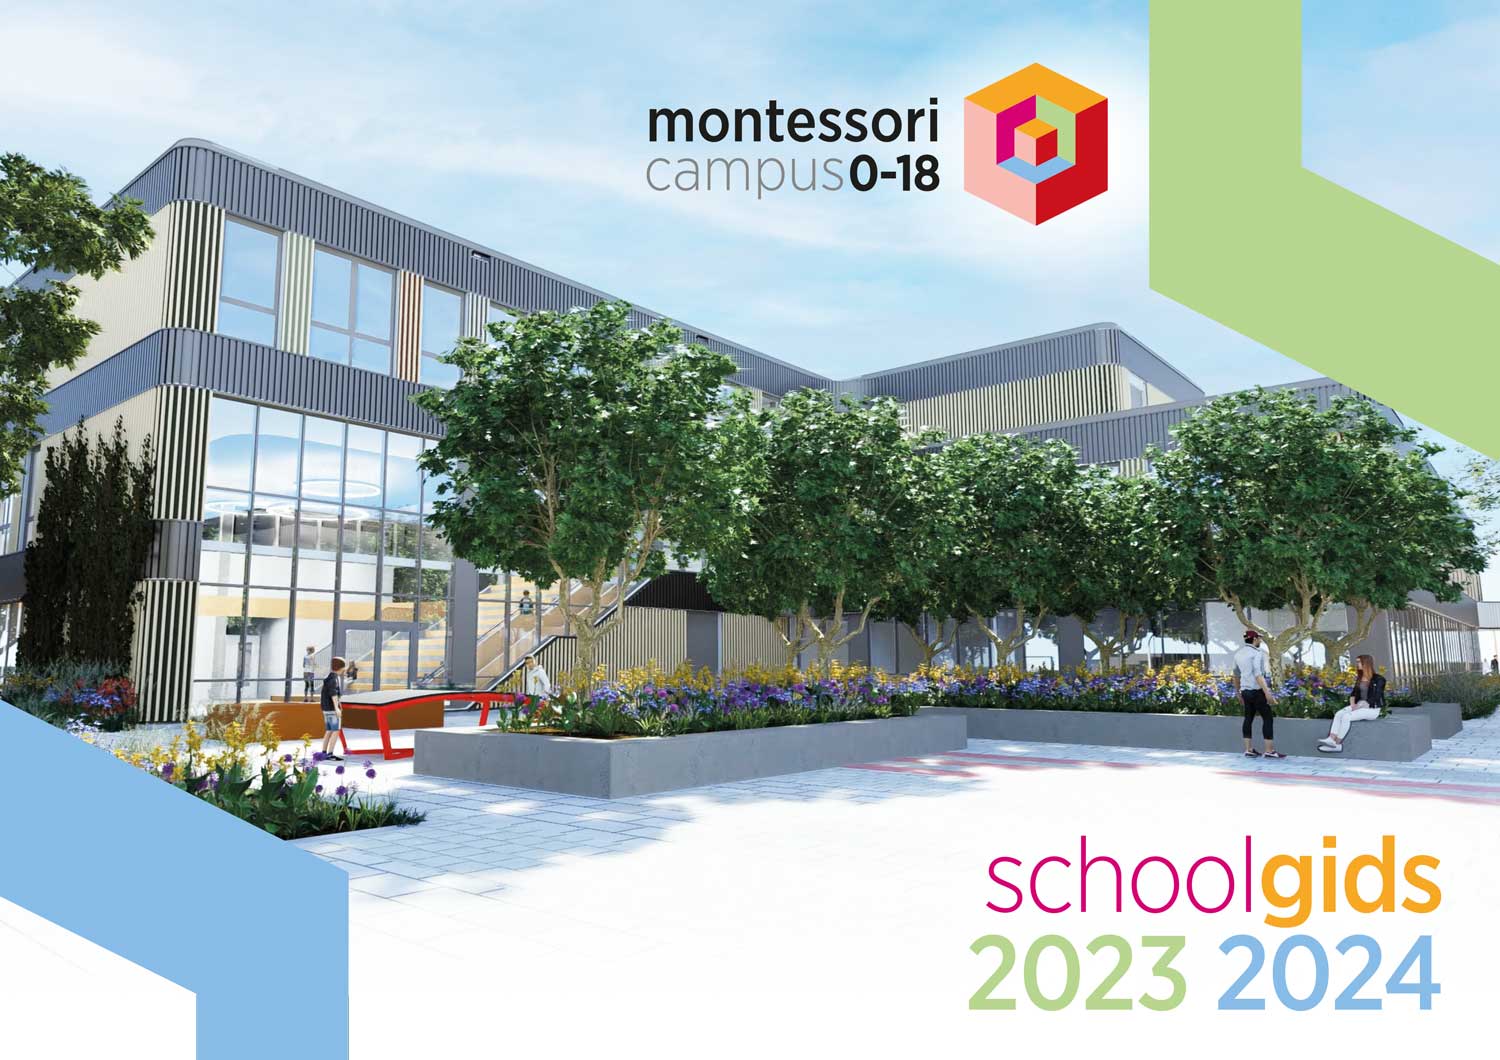 Montessori_schoolgids_2023-2024_voorkant